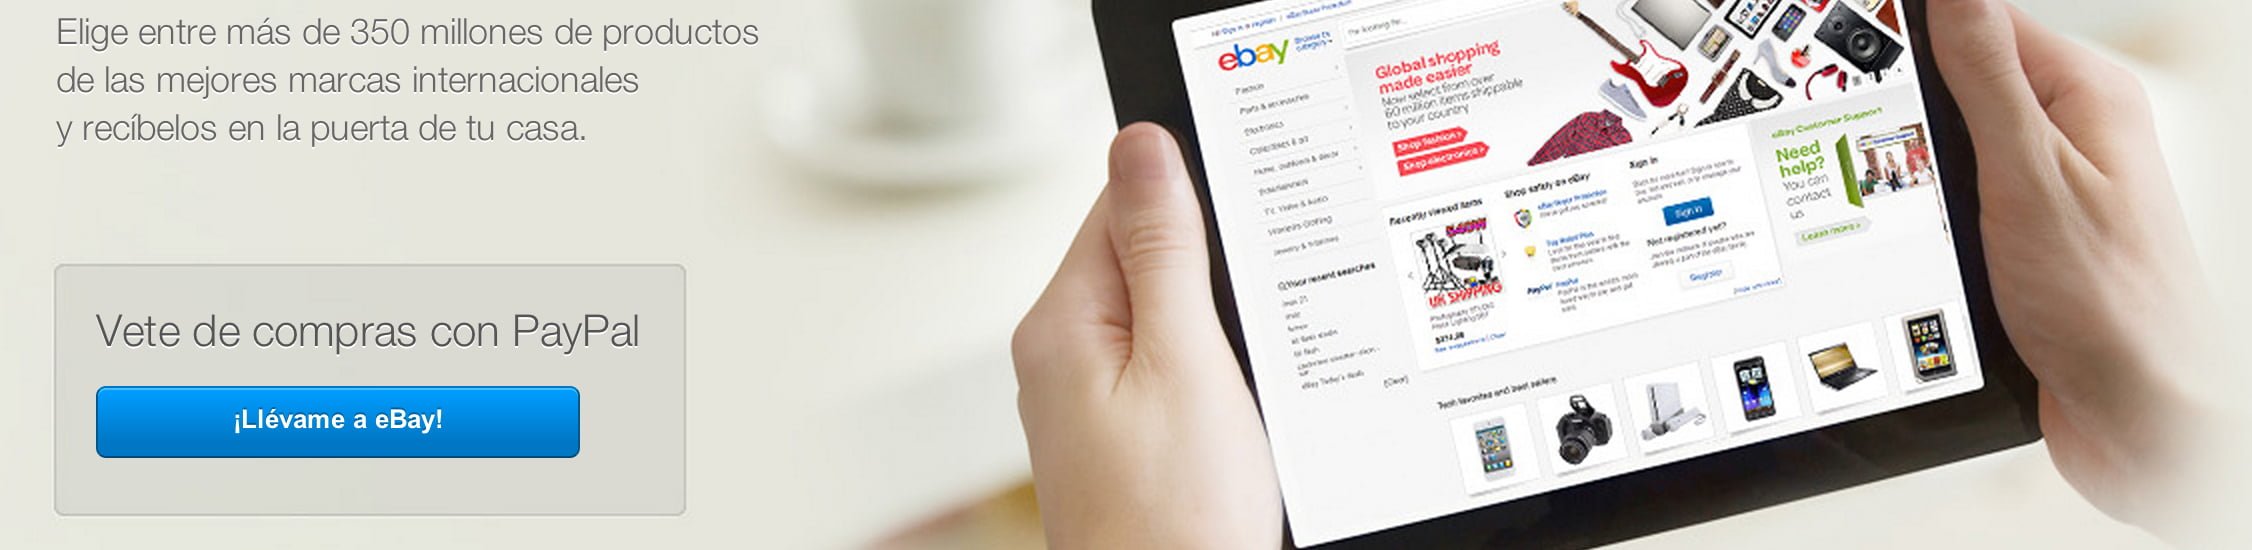 Cómo obtener una cuenta PayPal 100% funcional para enviar, recibir y retirar dinero en línea